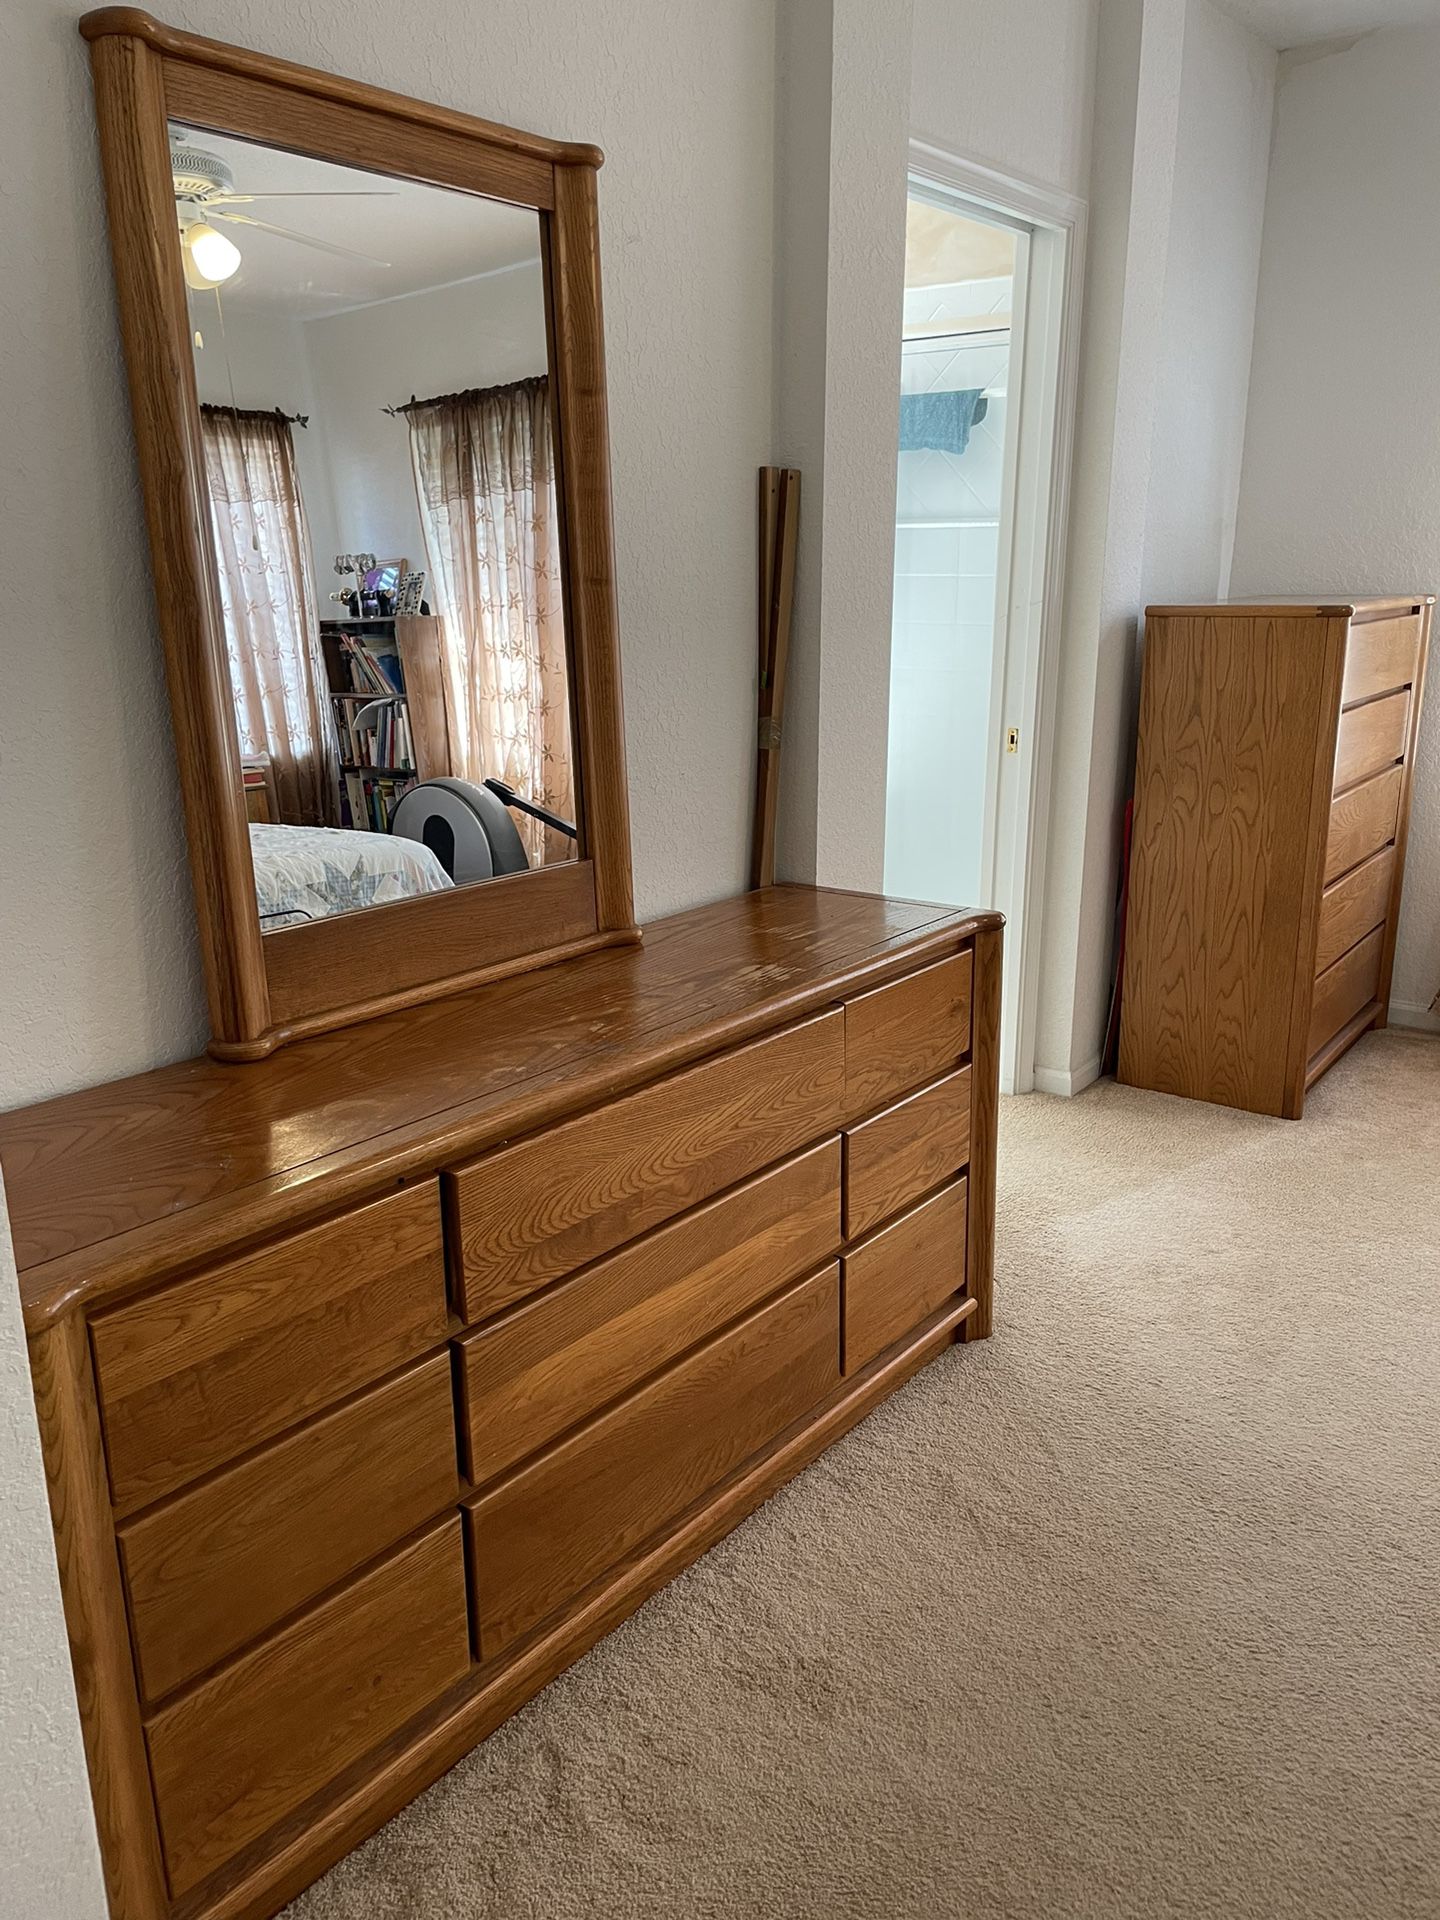 Queen Oak Bedroom set with nightstands